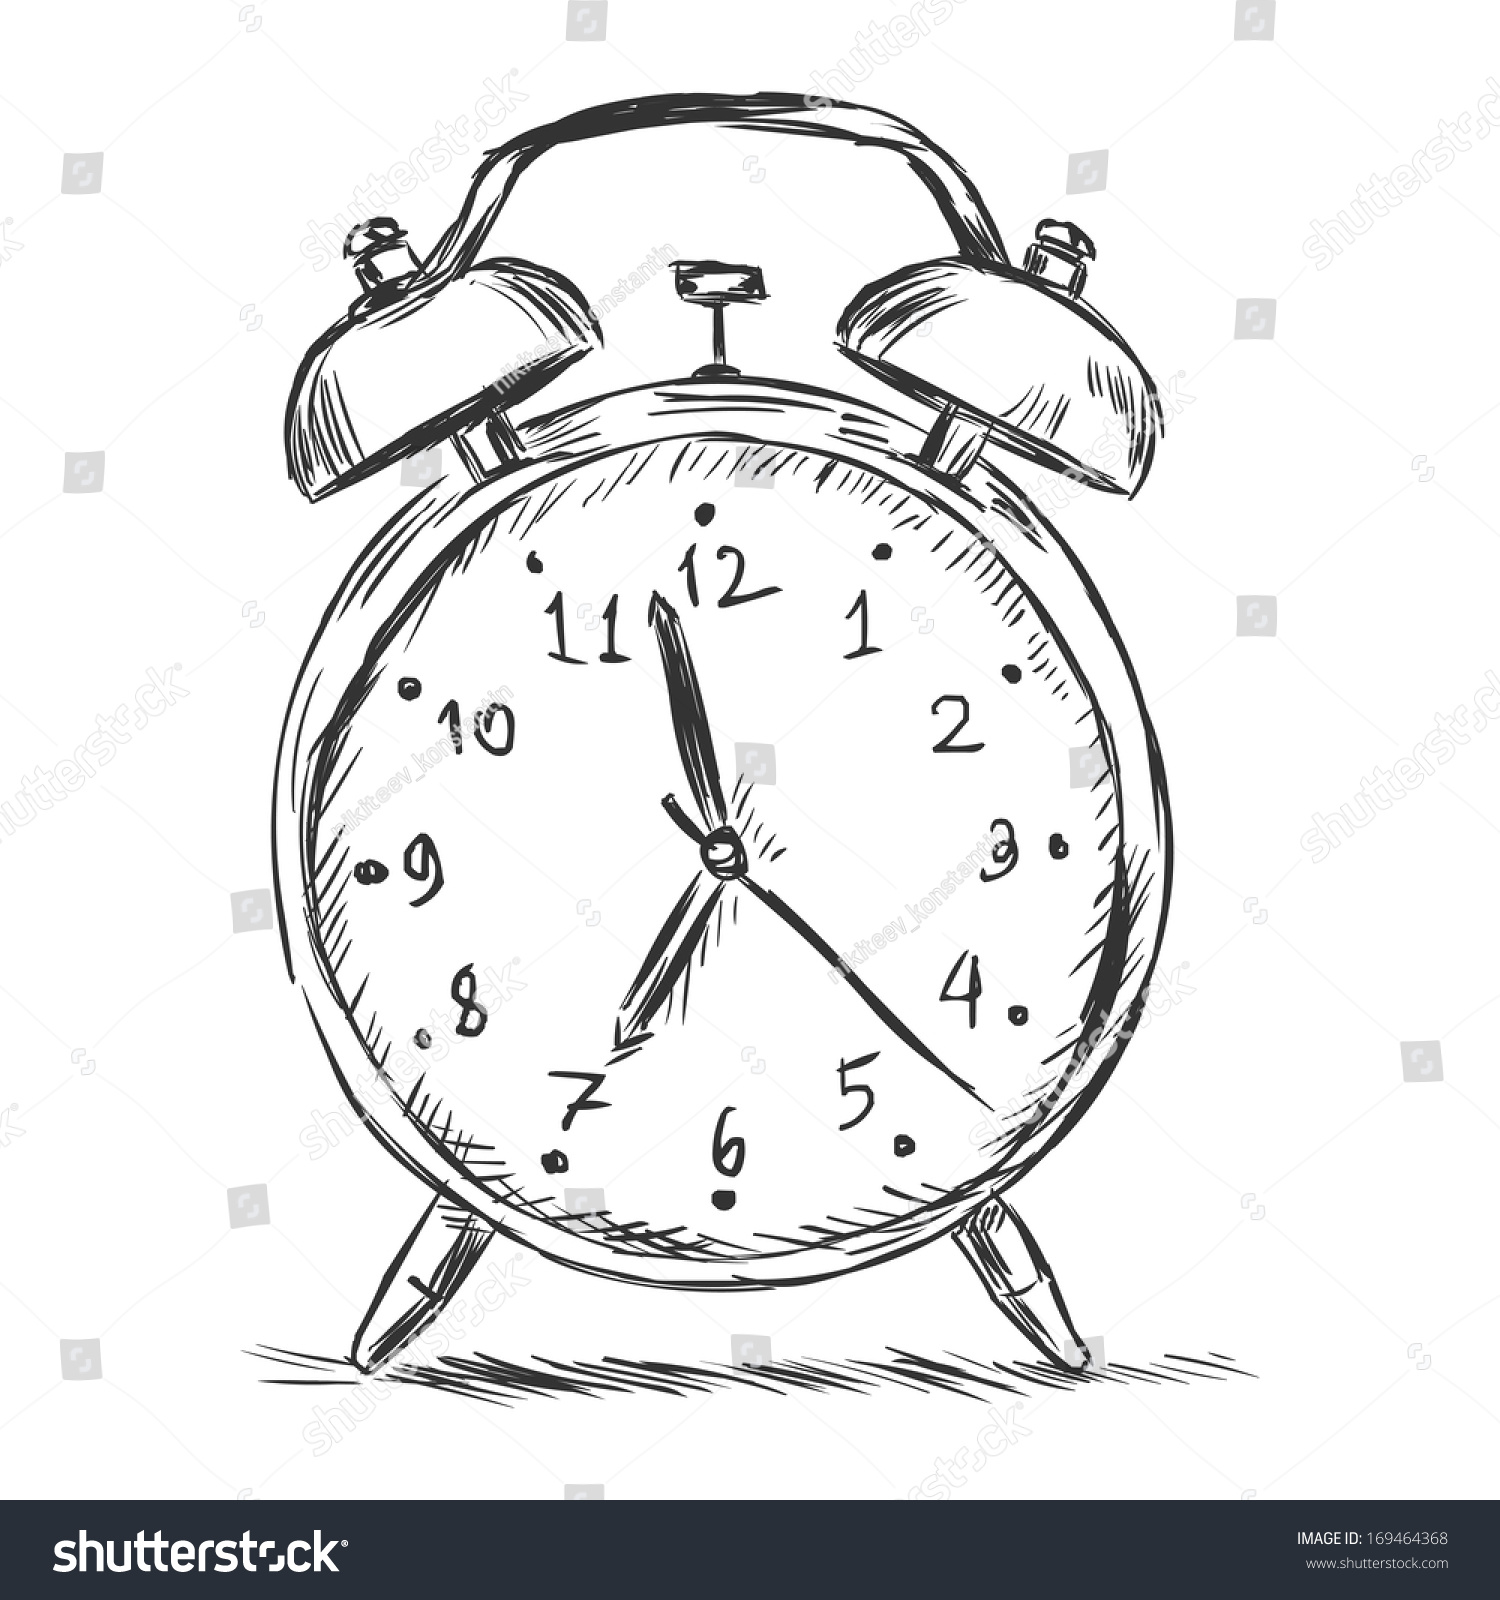 Vector Sketch Illustration Alarm Clock Stock Vector 169464368 - Shutterstock1500 x 1600